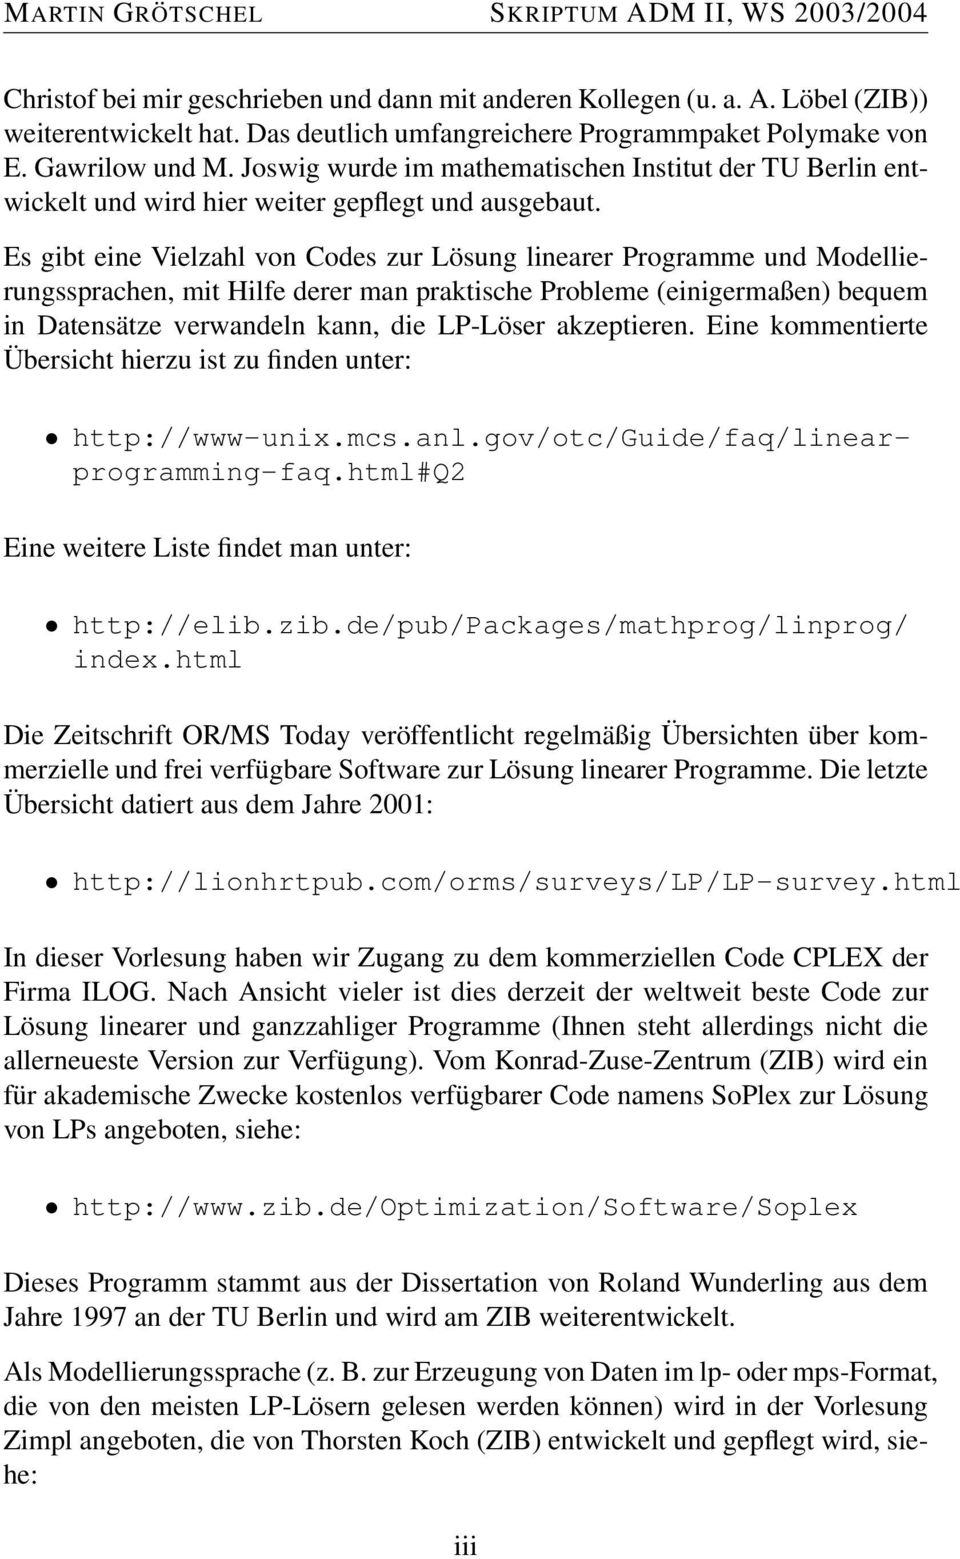 Es gibt eine Vielzahl von Codes zur Lösung linearer Programme und Modellierungssprachen, mit Hilfe derer man praktische Probleme (einigermaßen) bequem in Datensätze verwandeln kann, die LP-Löser